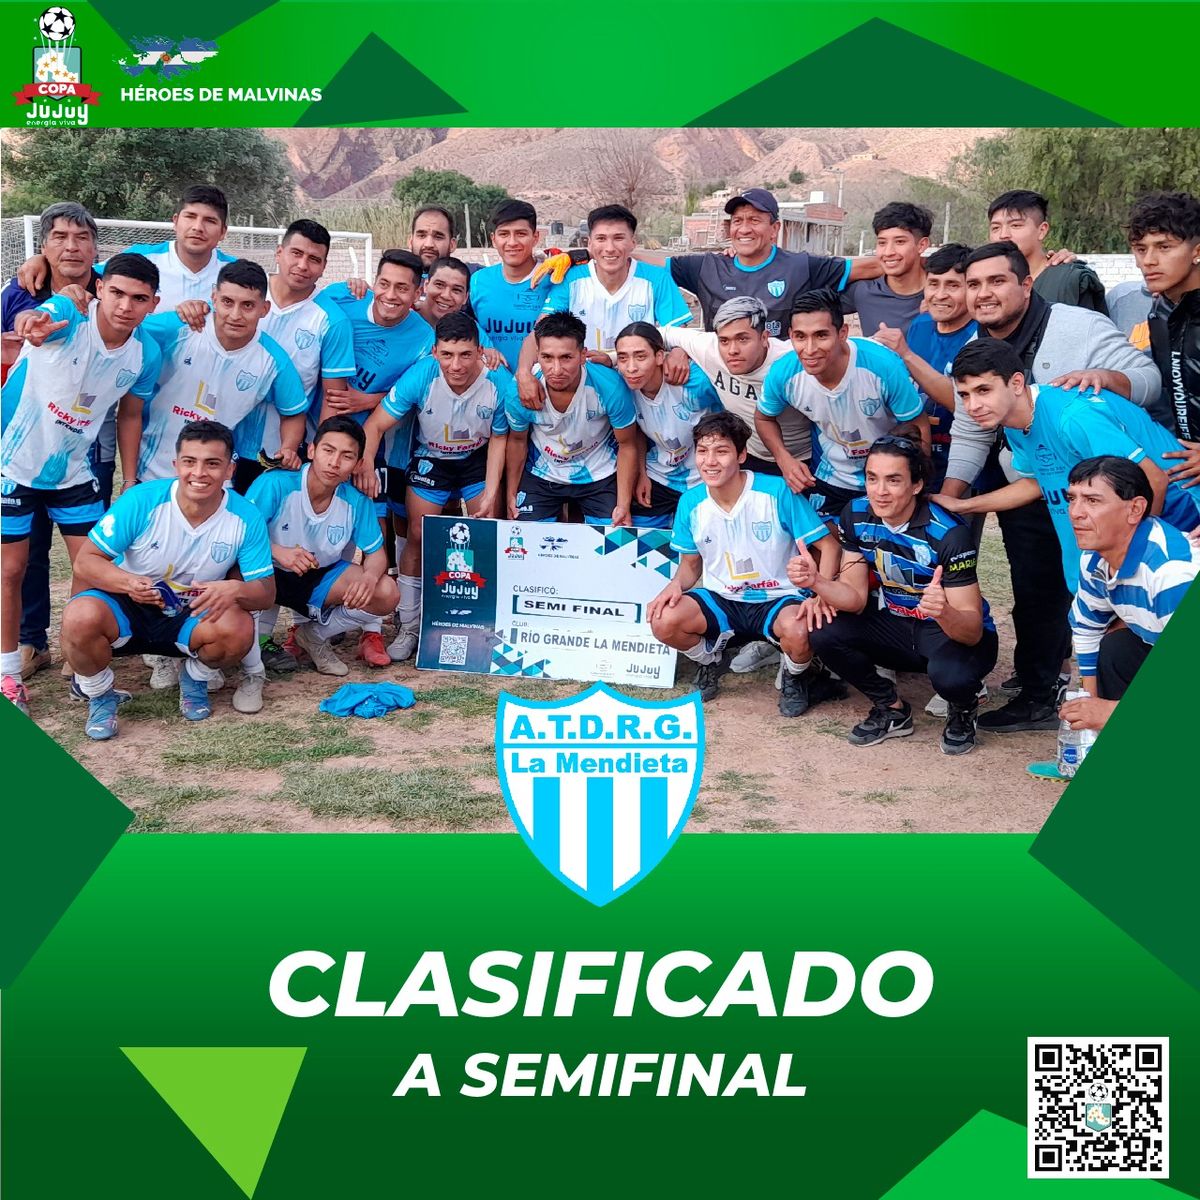 Se definieron los clasificados a semifinales de la Copa Jujuy en fútbol femenino y masculino